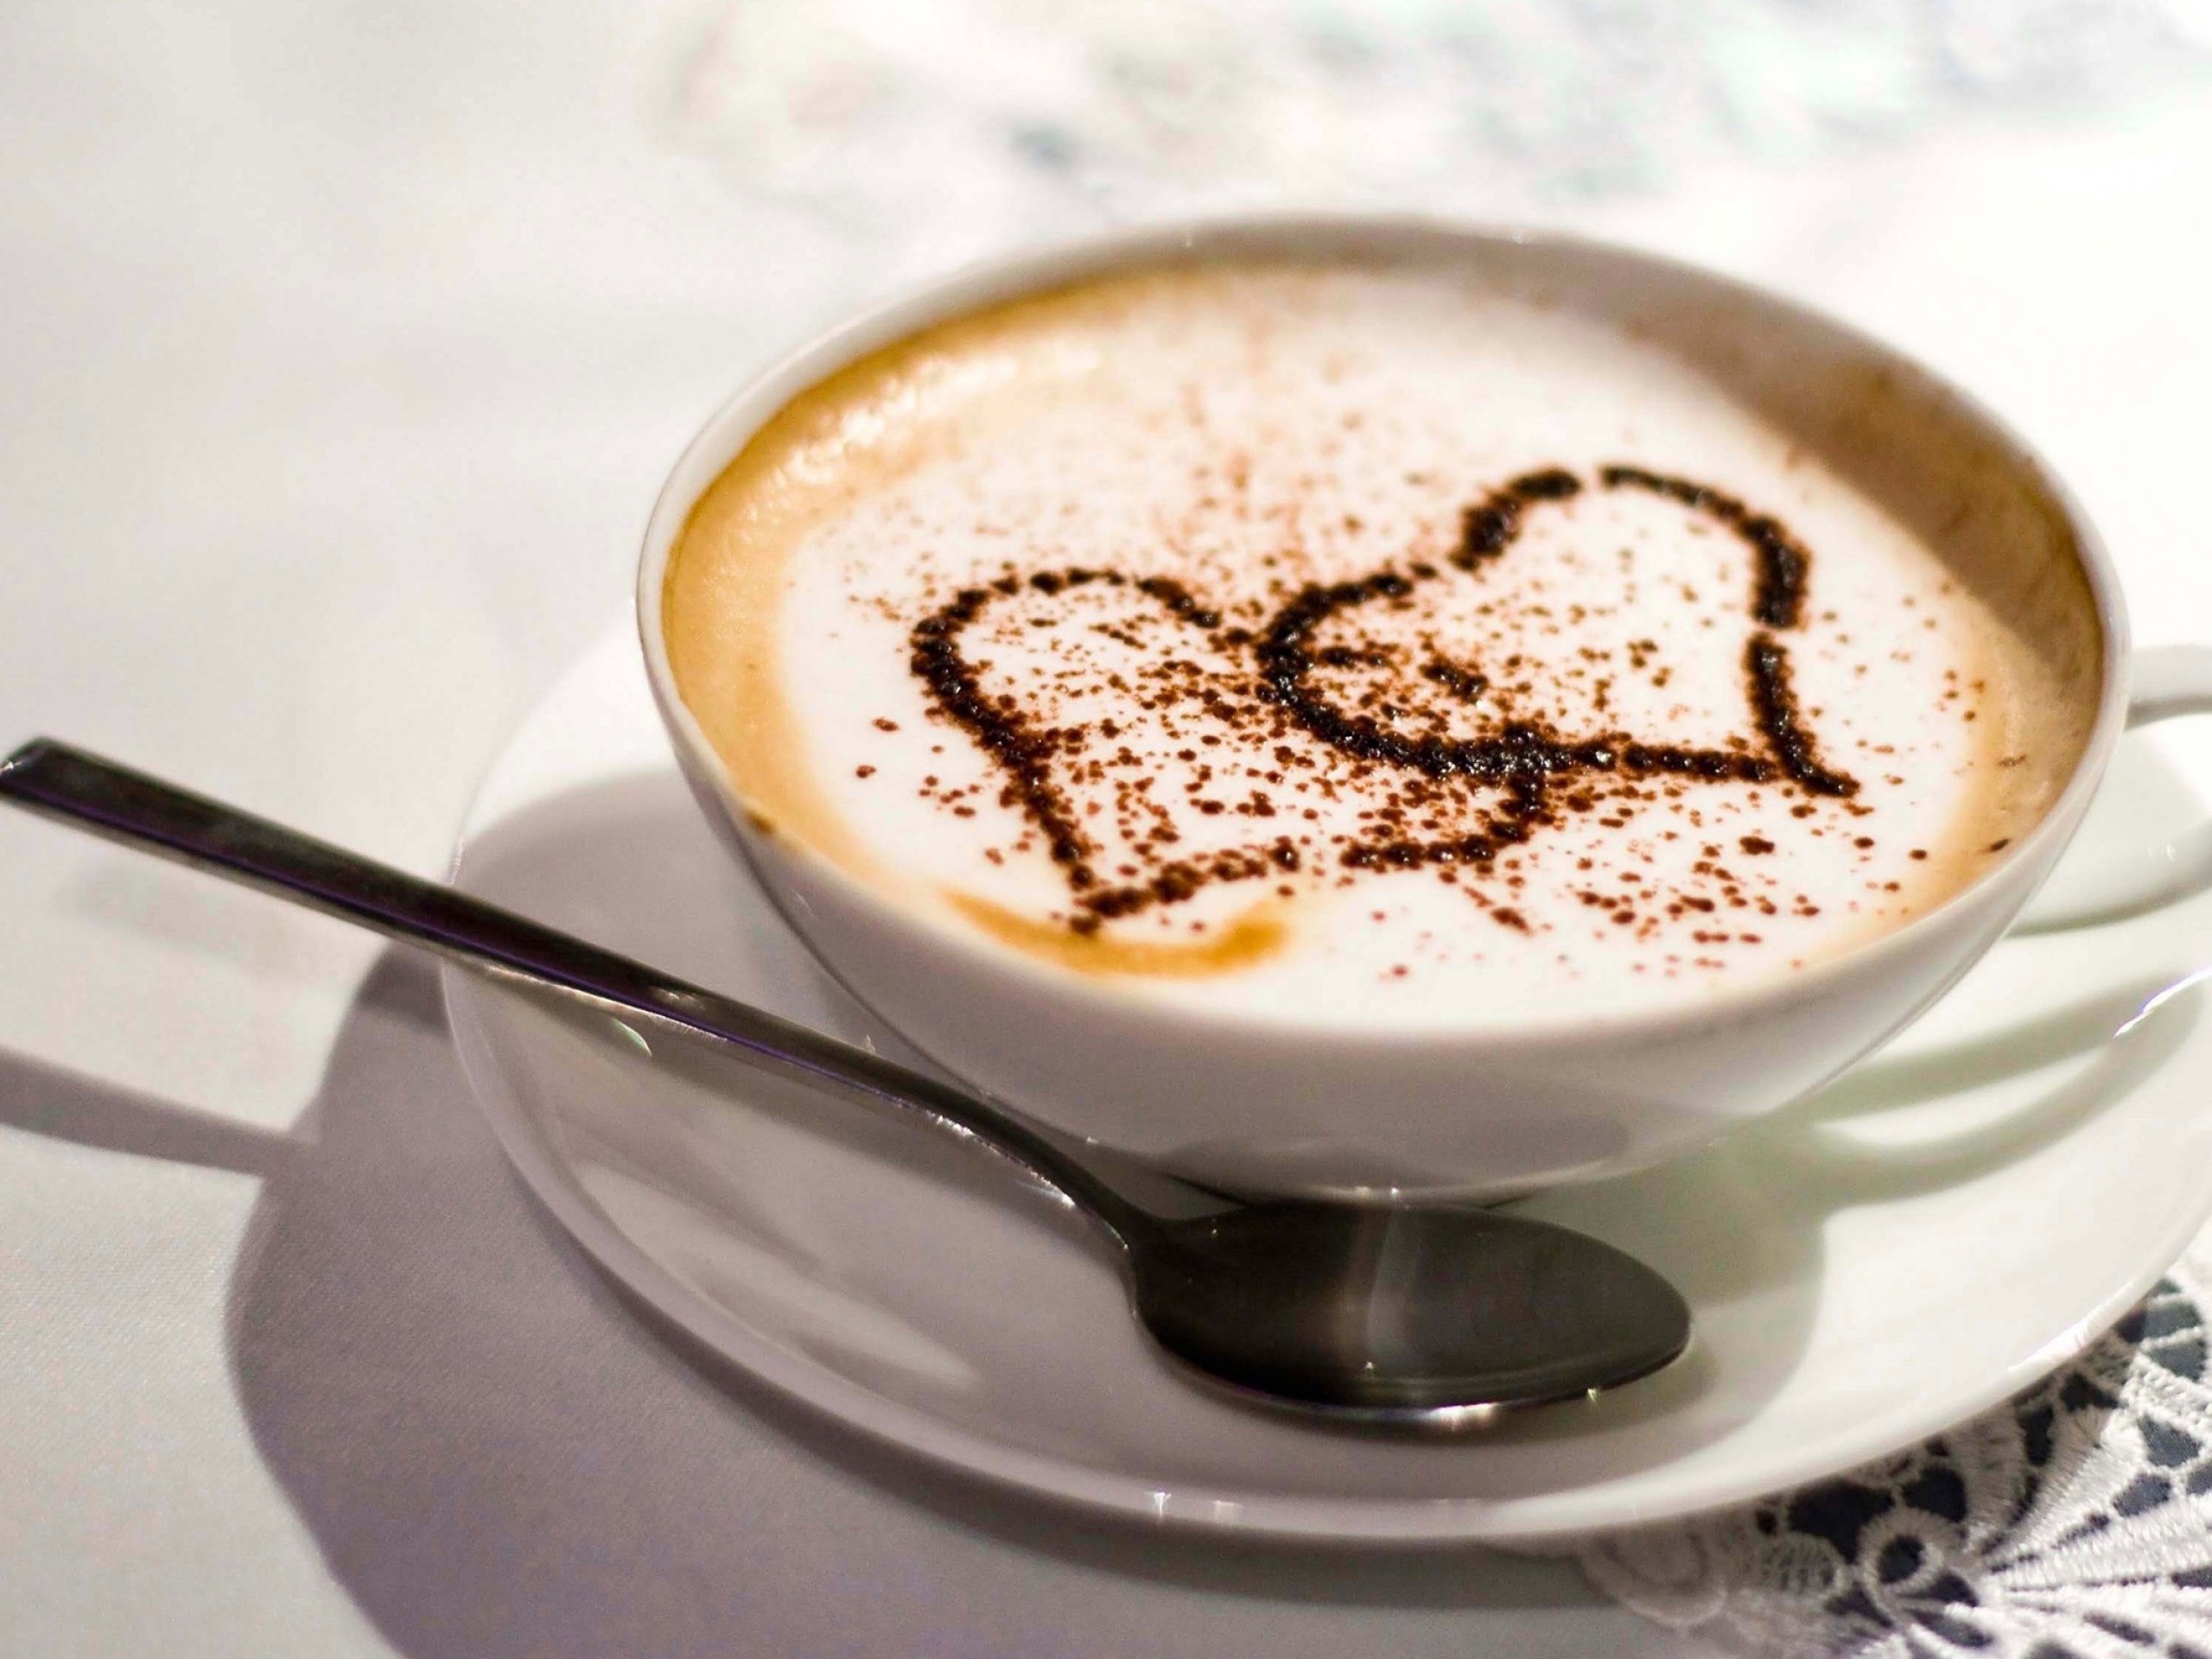 Coffee Love Heart